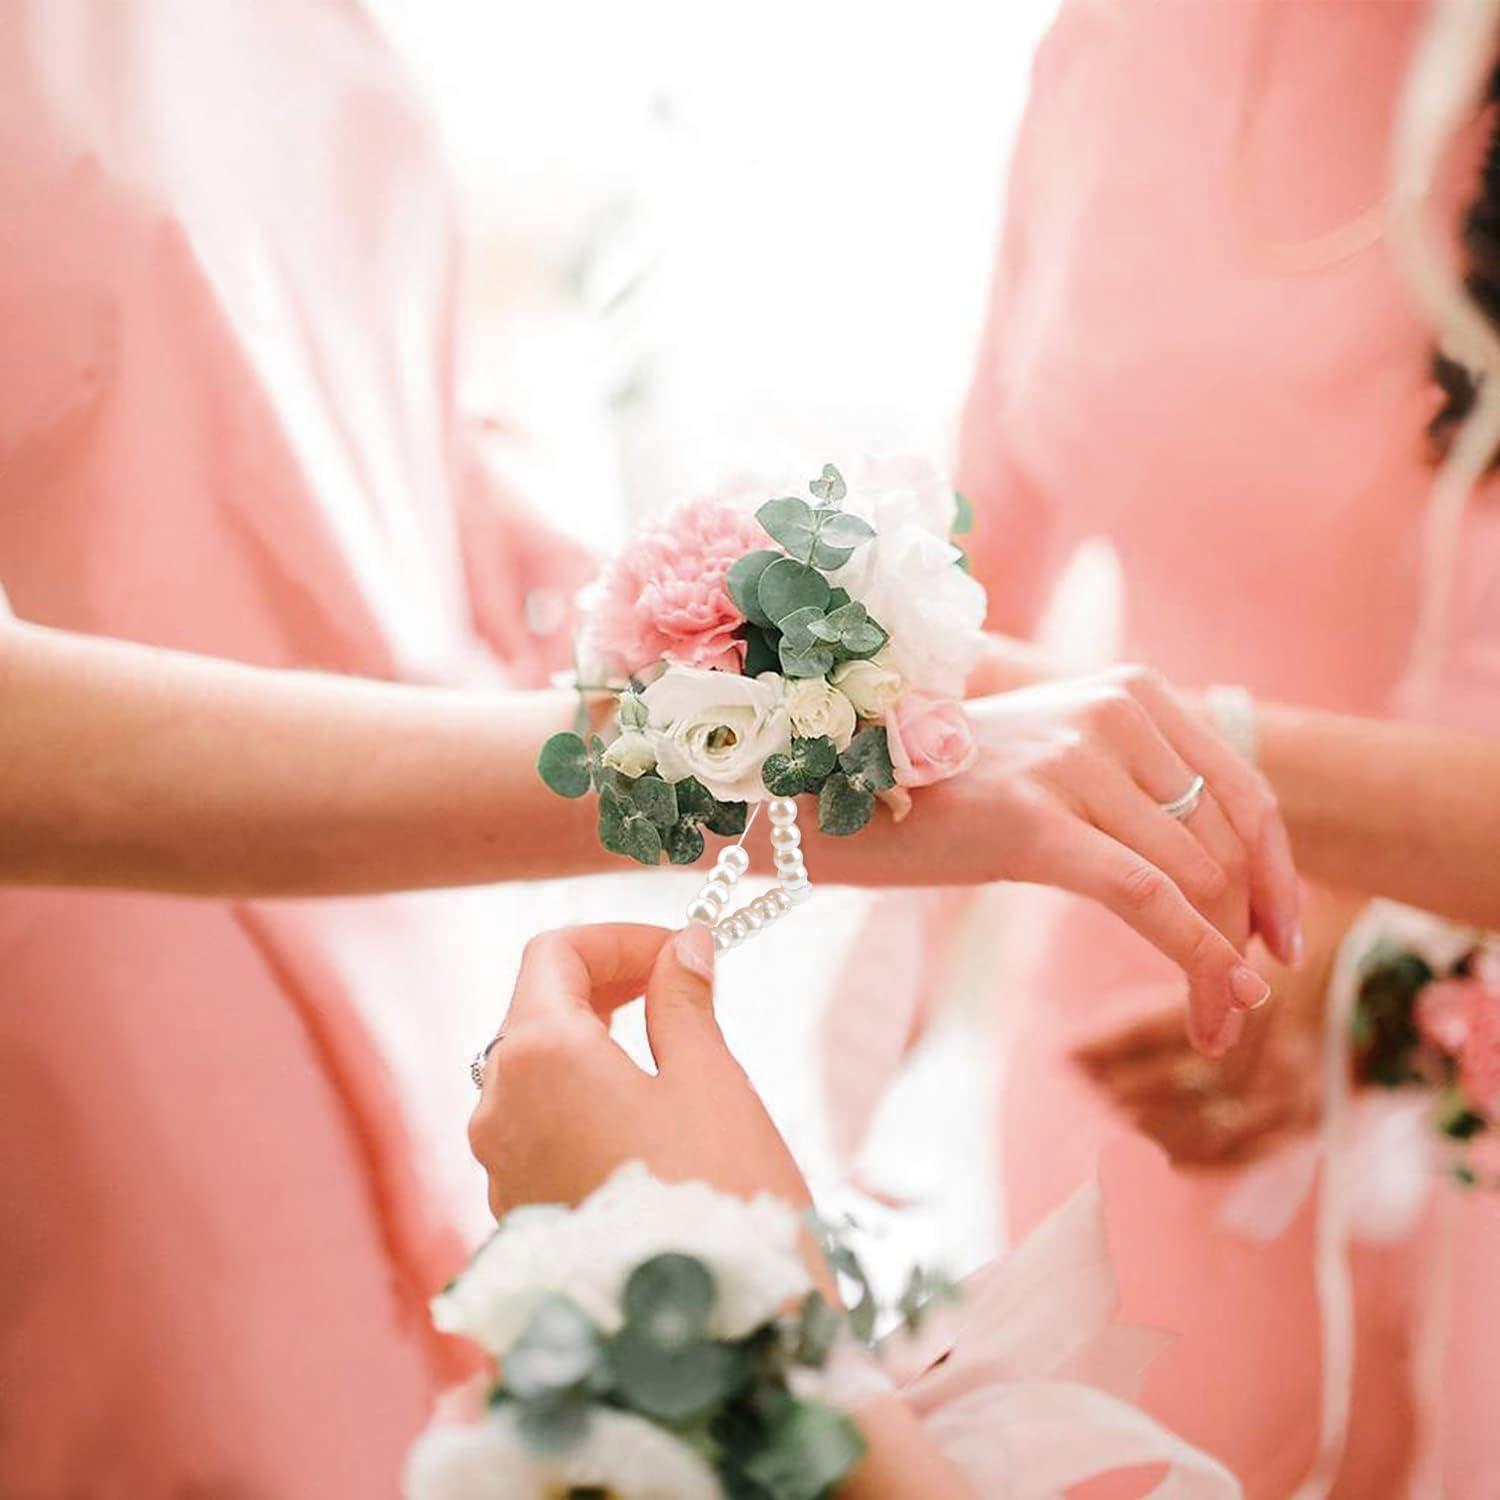 Corsage Bracelet, Flower Wrist Bracelet, Flower Wrist Corsage, Wedding  Flower Hand Bracelet, Bride Wedding Wrist Corsage, Flower Accessories 